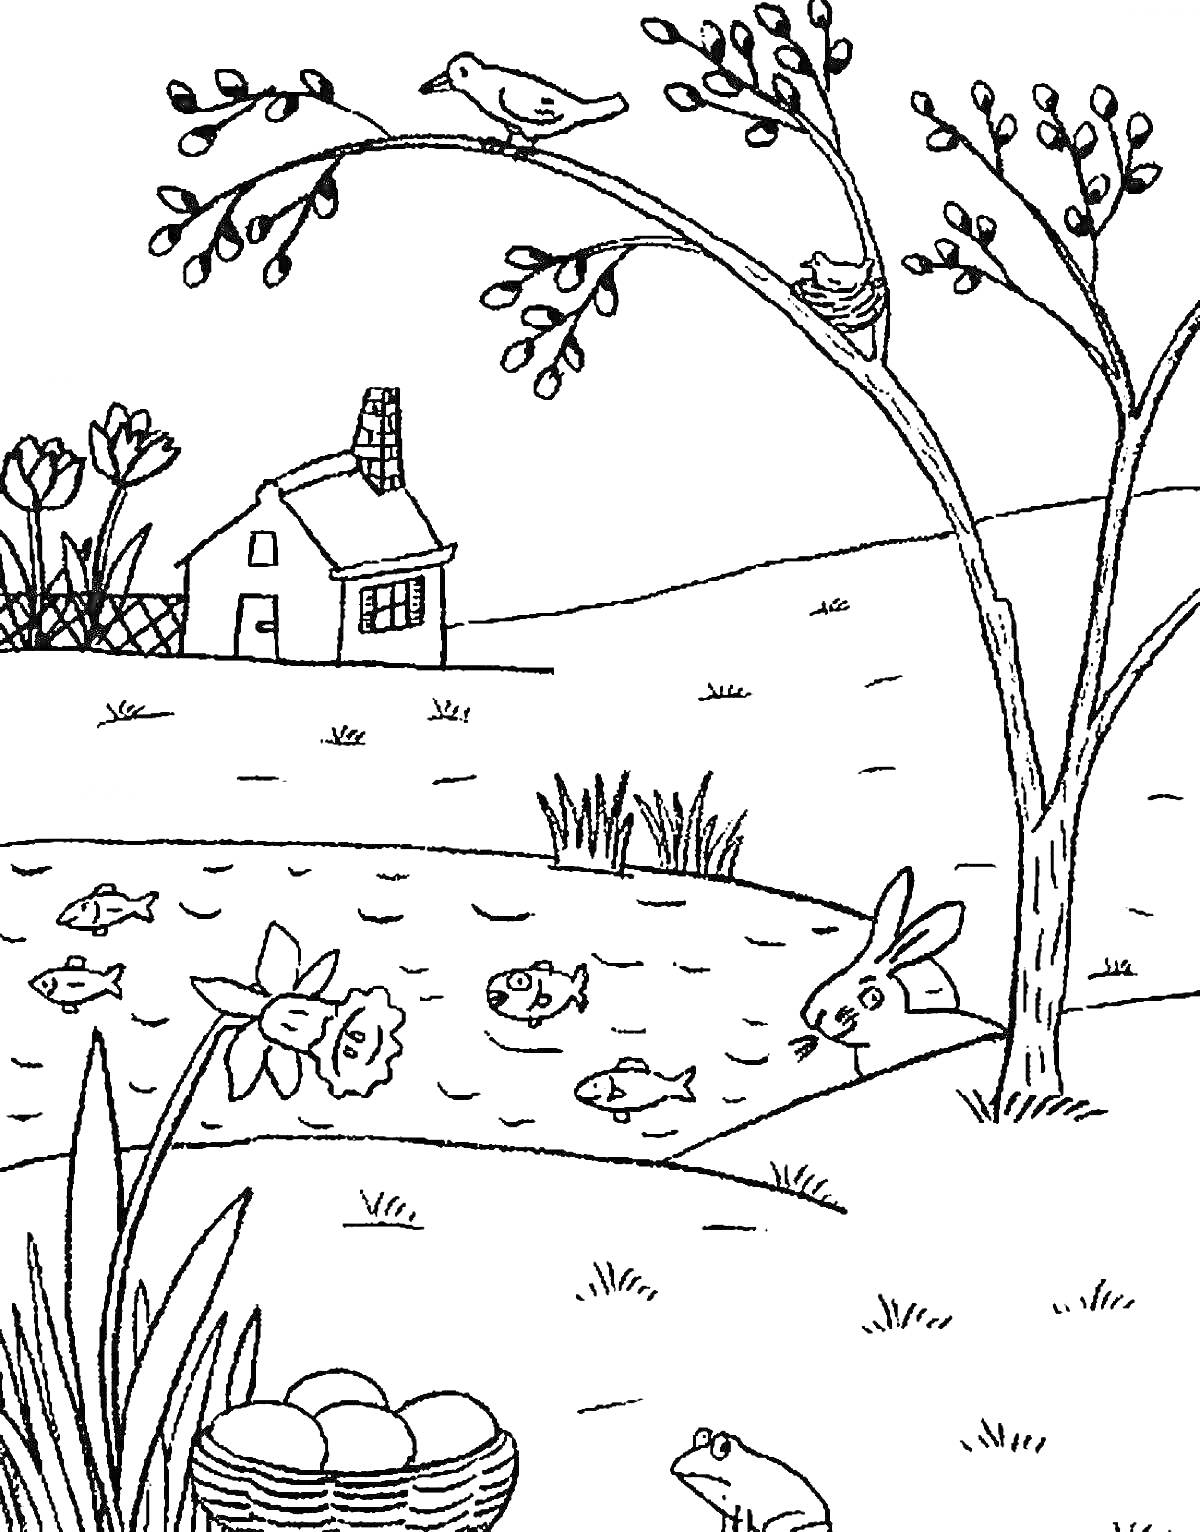 Весенний пейзаж с домом, птицами на дереве, лягушками, зайцем, водоемом с рыбками и цветущими нарциссами